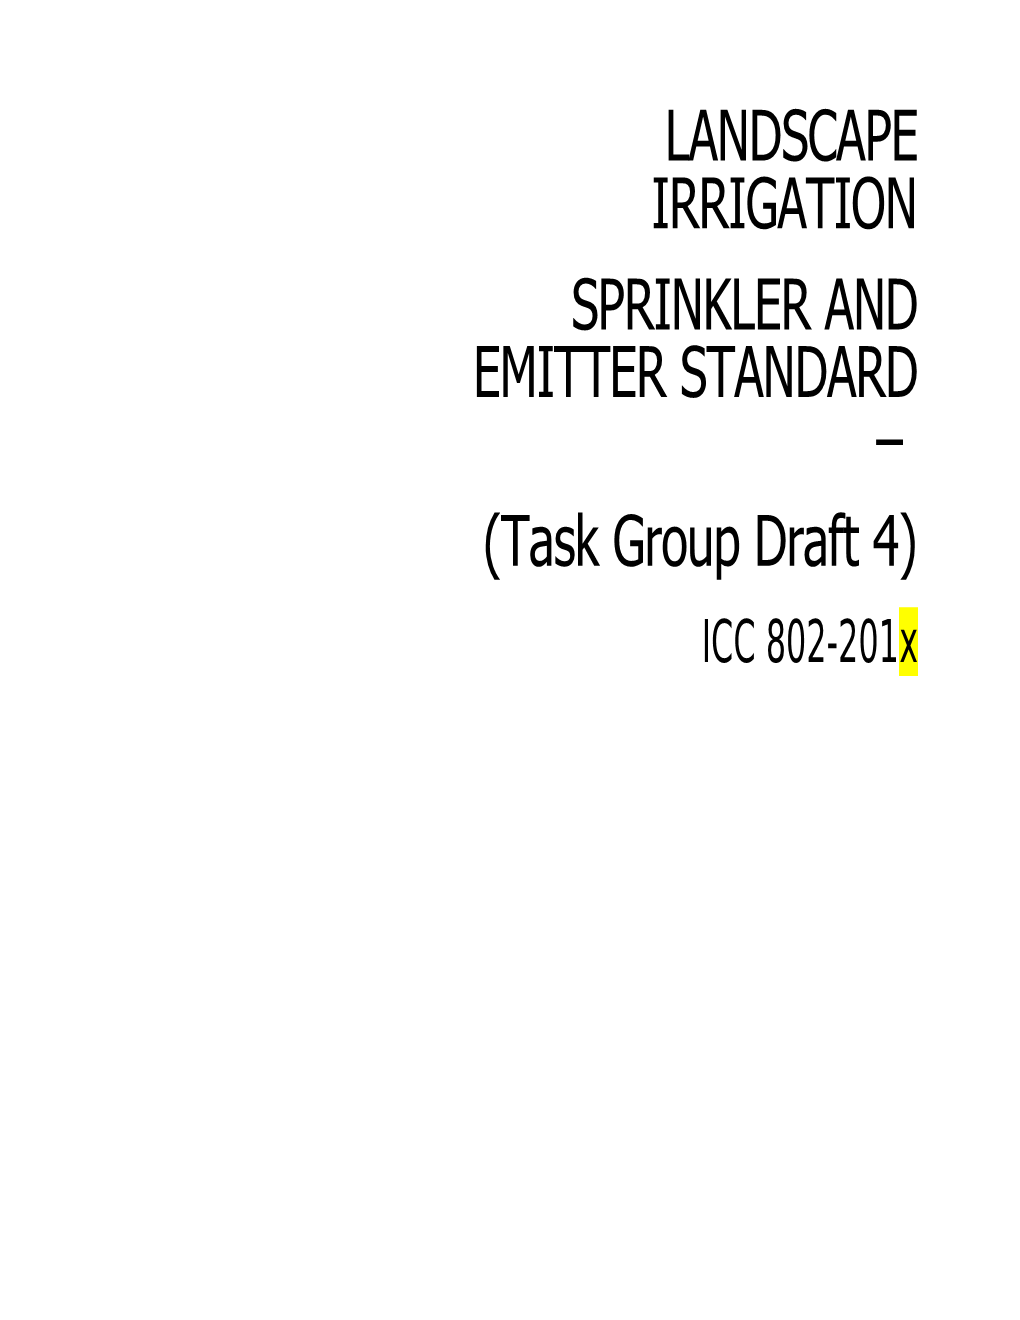 201X ICC Landscape Irrigation Sprinkler and Emitter Standard (Task Group Draft 4)